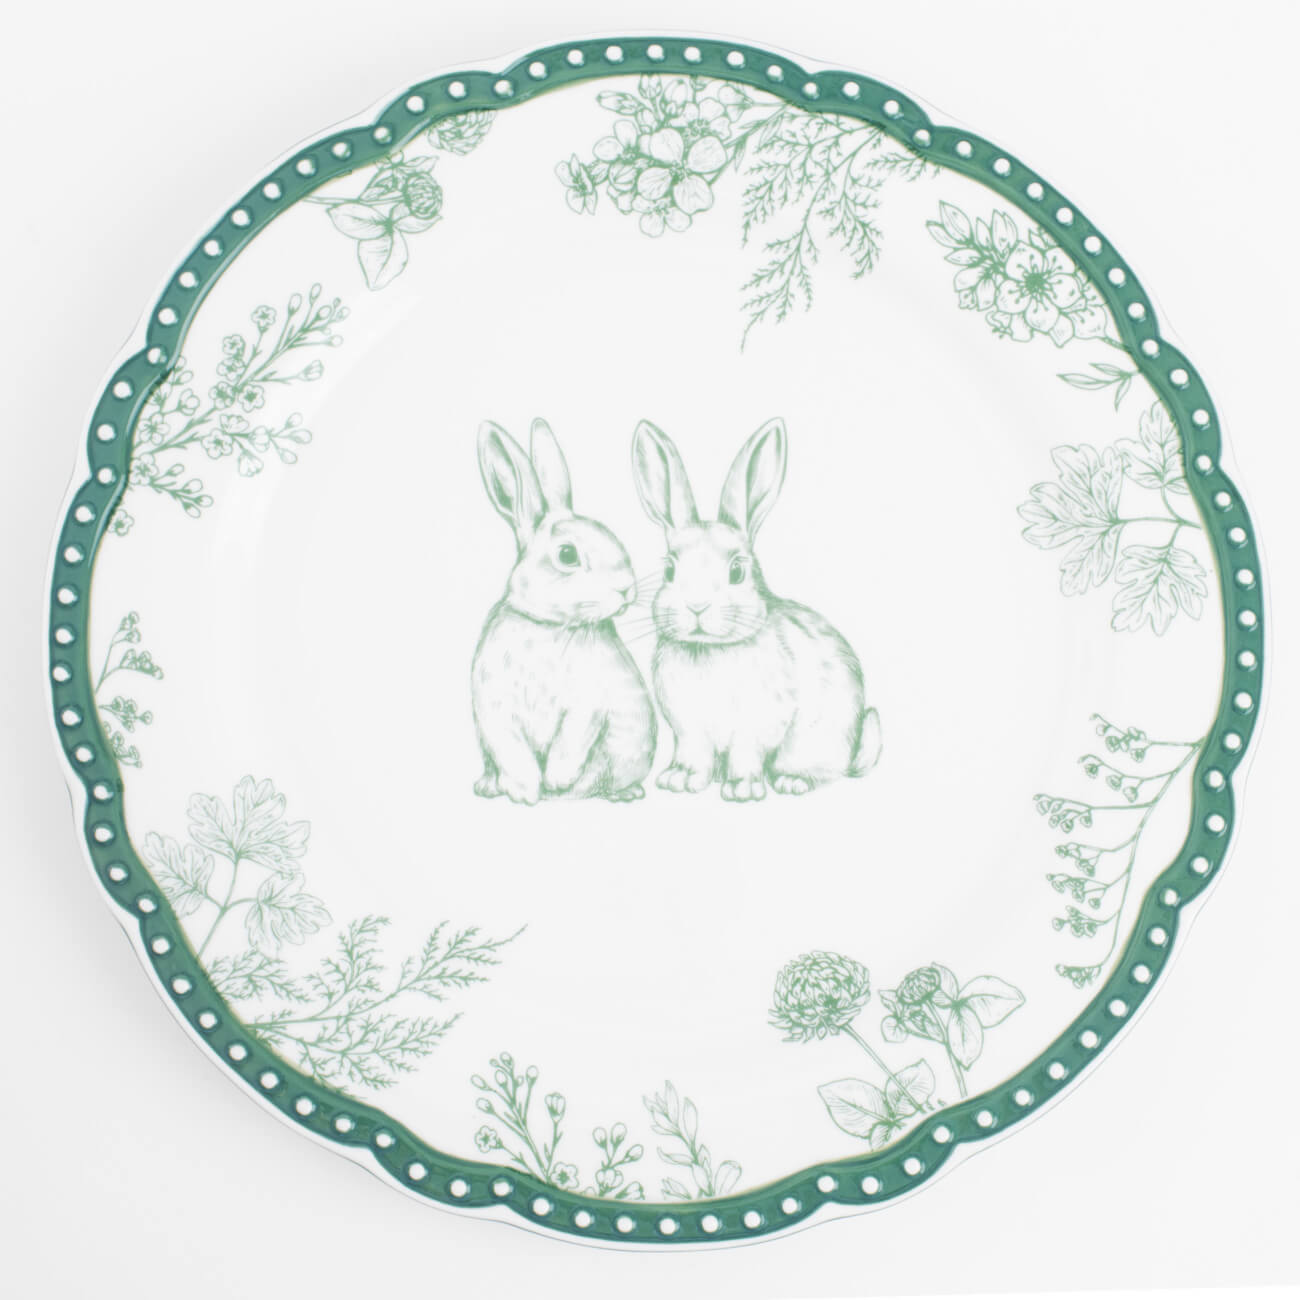 Тарелка обеденная, 27 см, керамика, бело-зеленая, Кролики и цветы, Easter blooming набор для соли и перца 10 см фарфор p белый кролики с ами pure easter